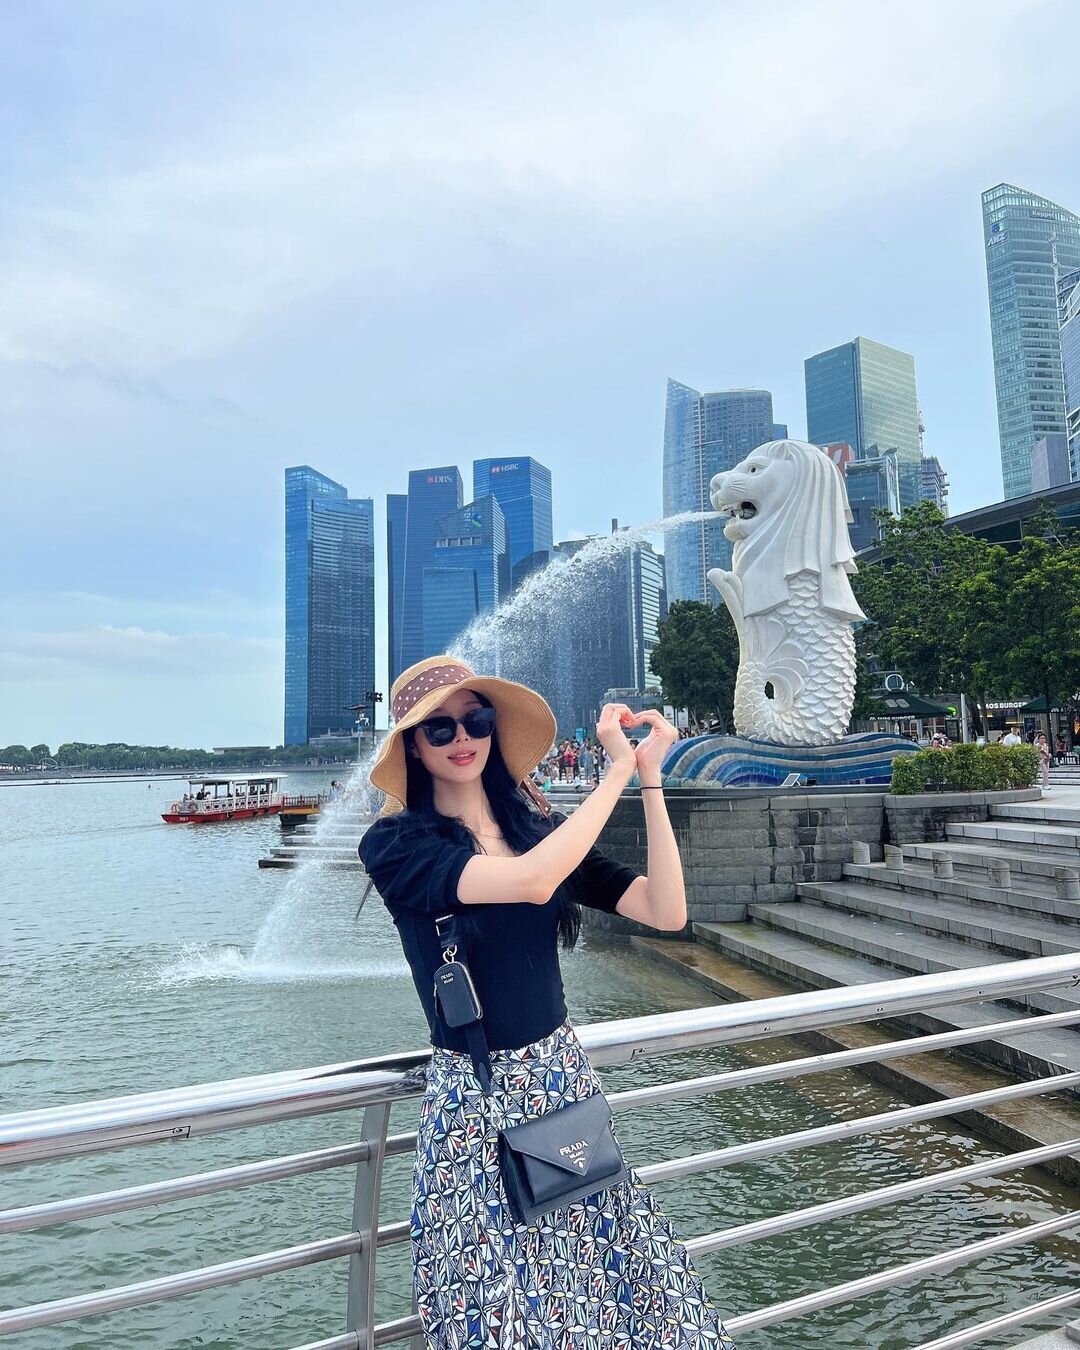 Bức tượng đá sư tử biển ở công viên Merlion Park là biểu tượng và cũng là điểm check in nổi tiếng nhất mà du lịch Singapore du khách không thể bỏ qua.